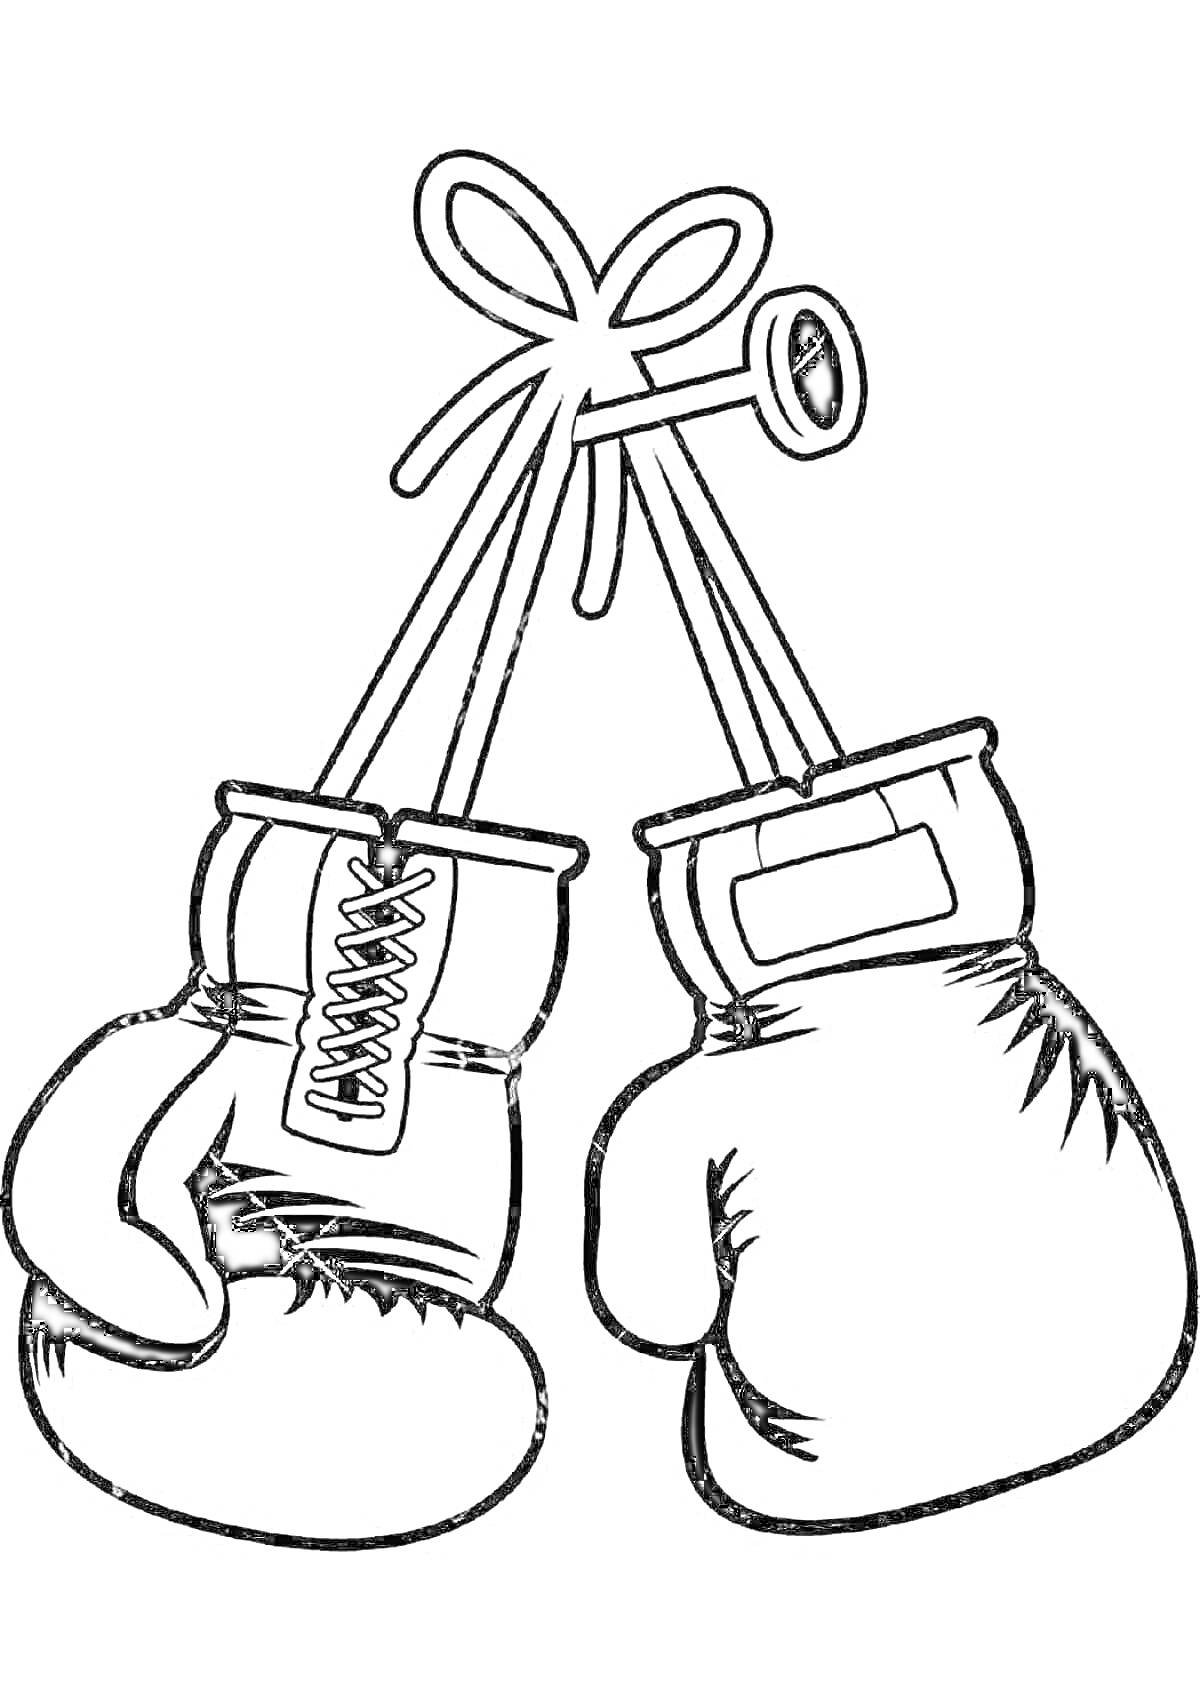 Раскраска боксерские перчатки, связанные шнурком